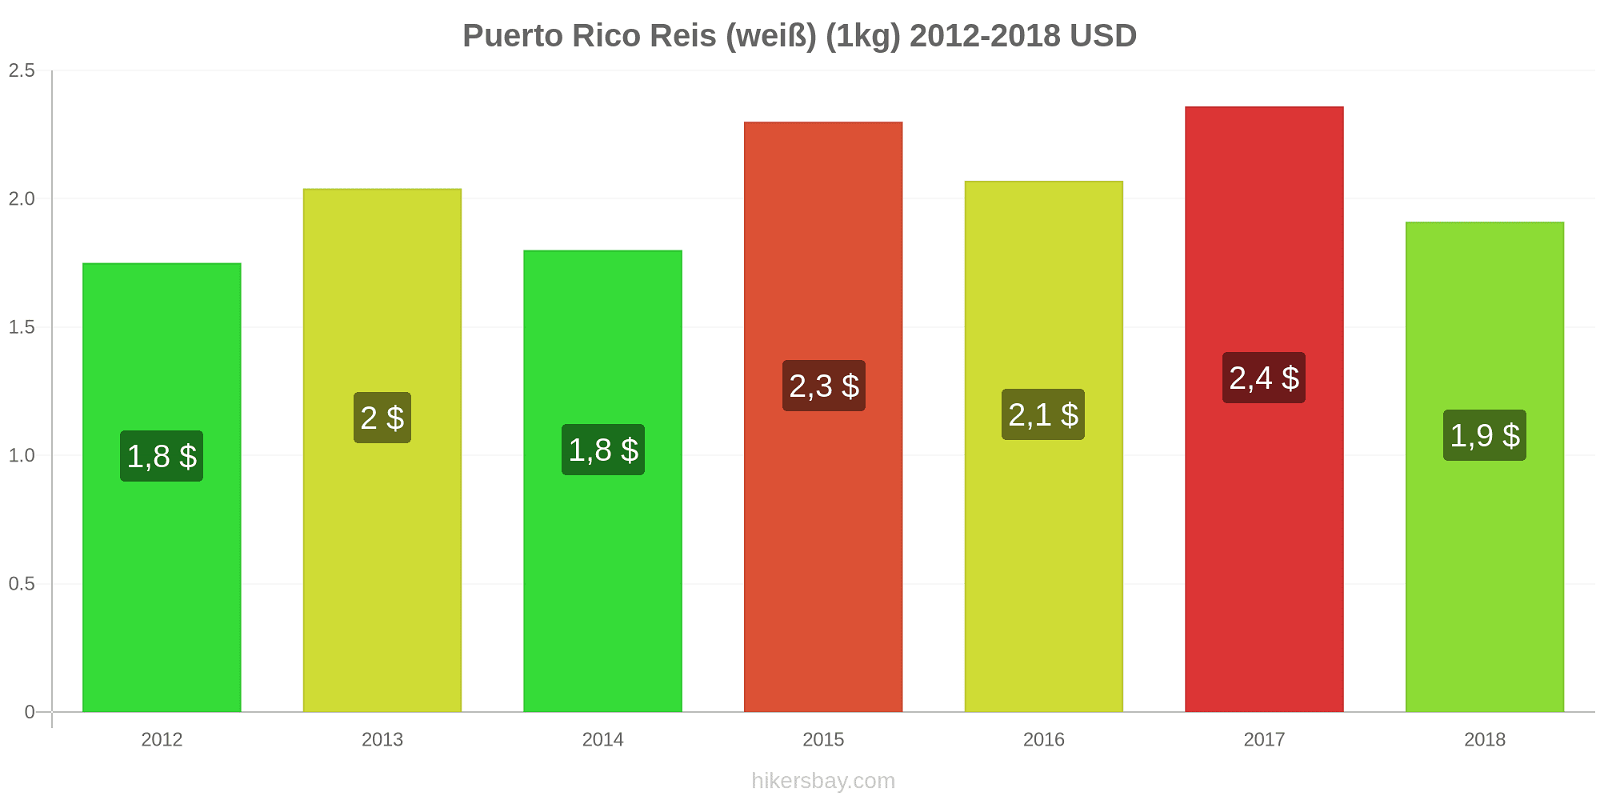 Puerto Rico Preisänderungen Reis (weiß) (1kg) hikersbay.com